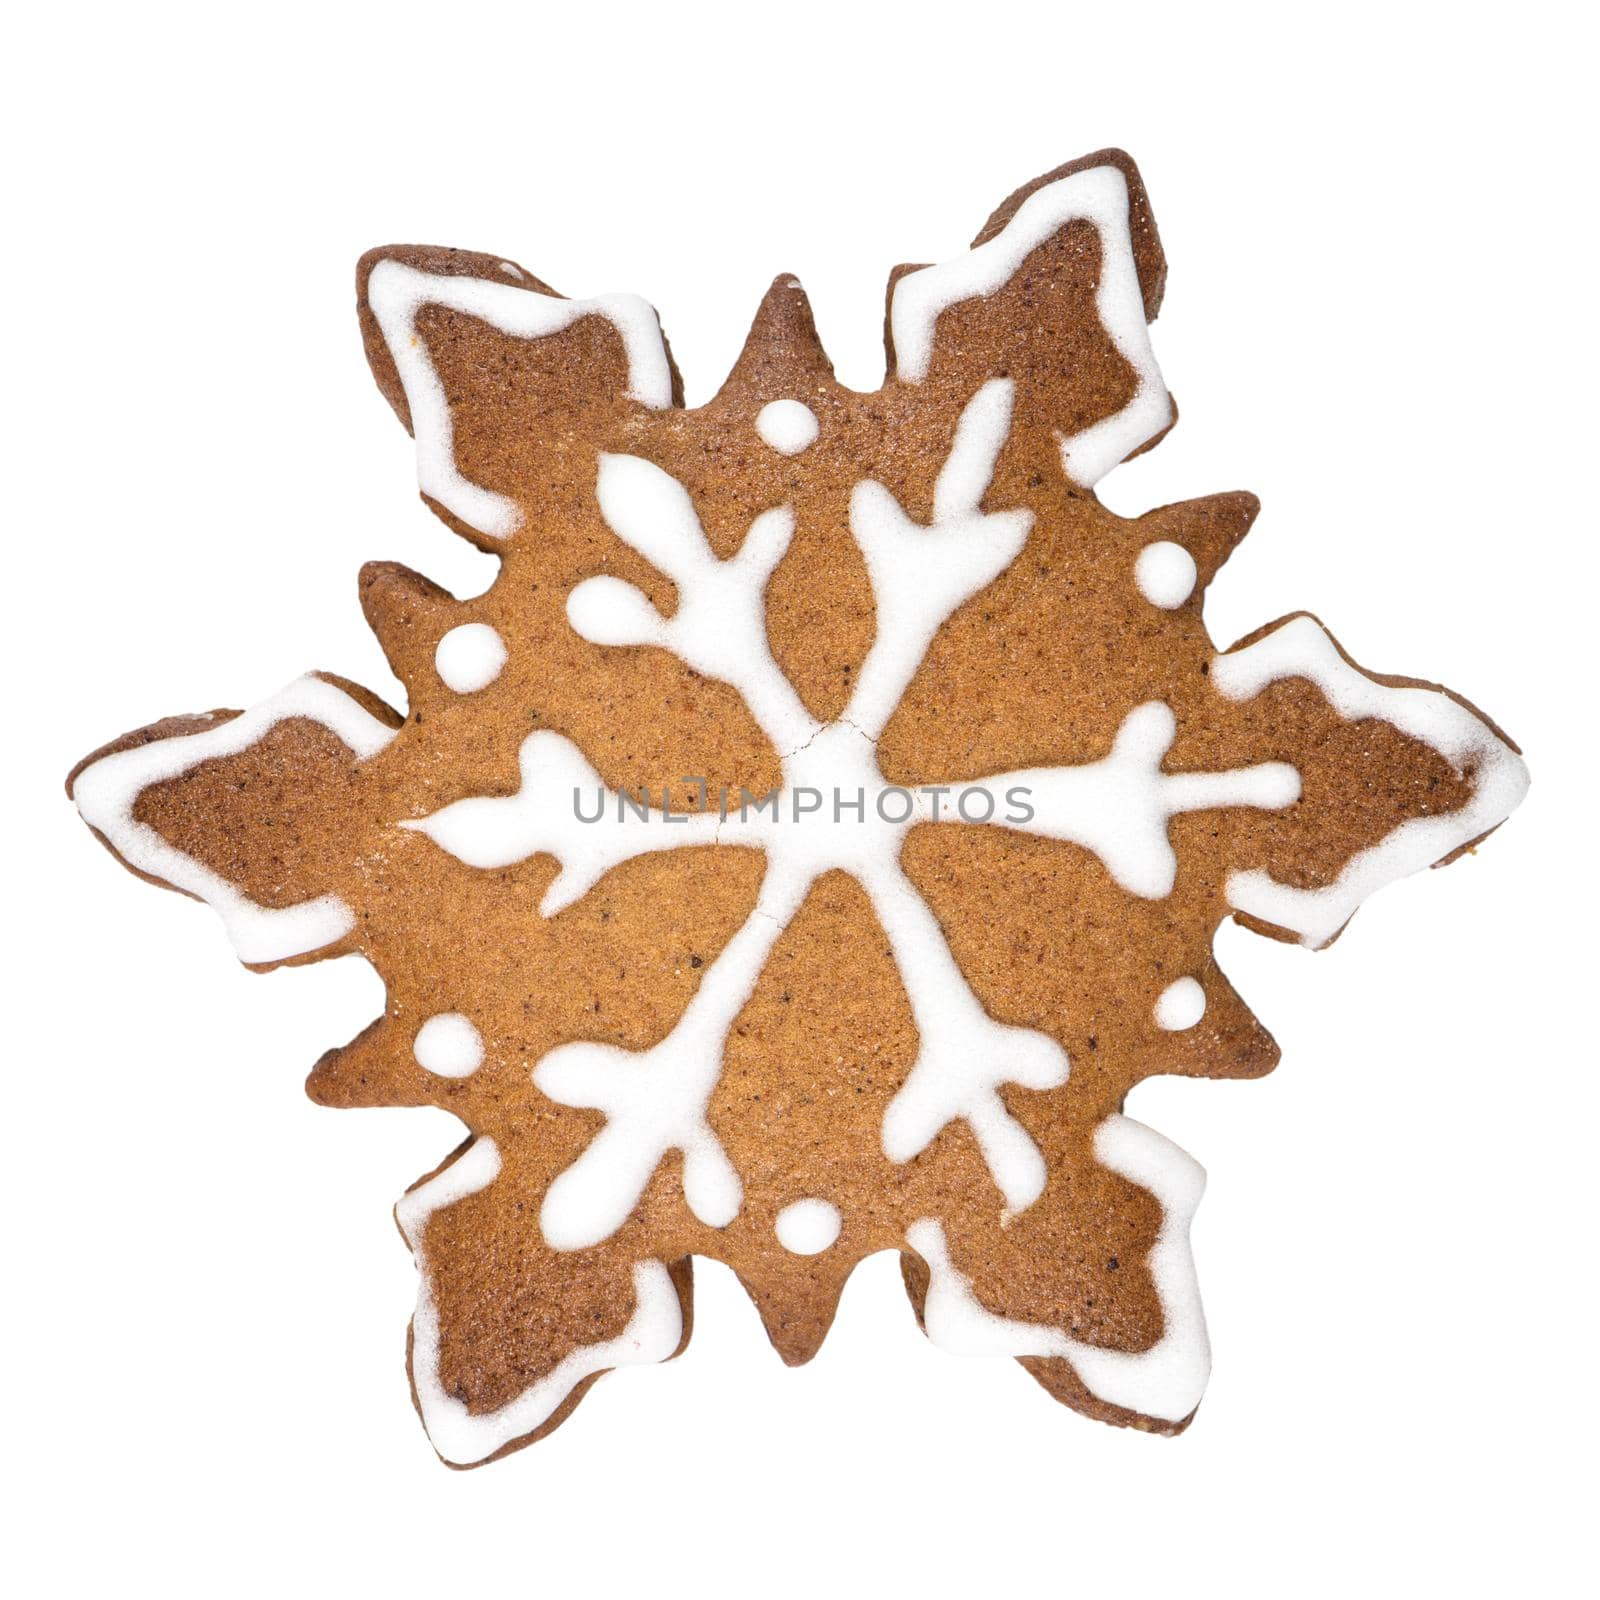 Gingerbread cookie in snowflake shape by homydesign